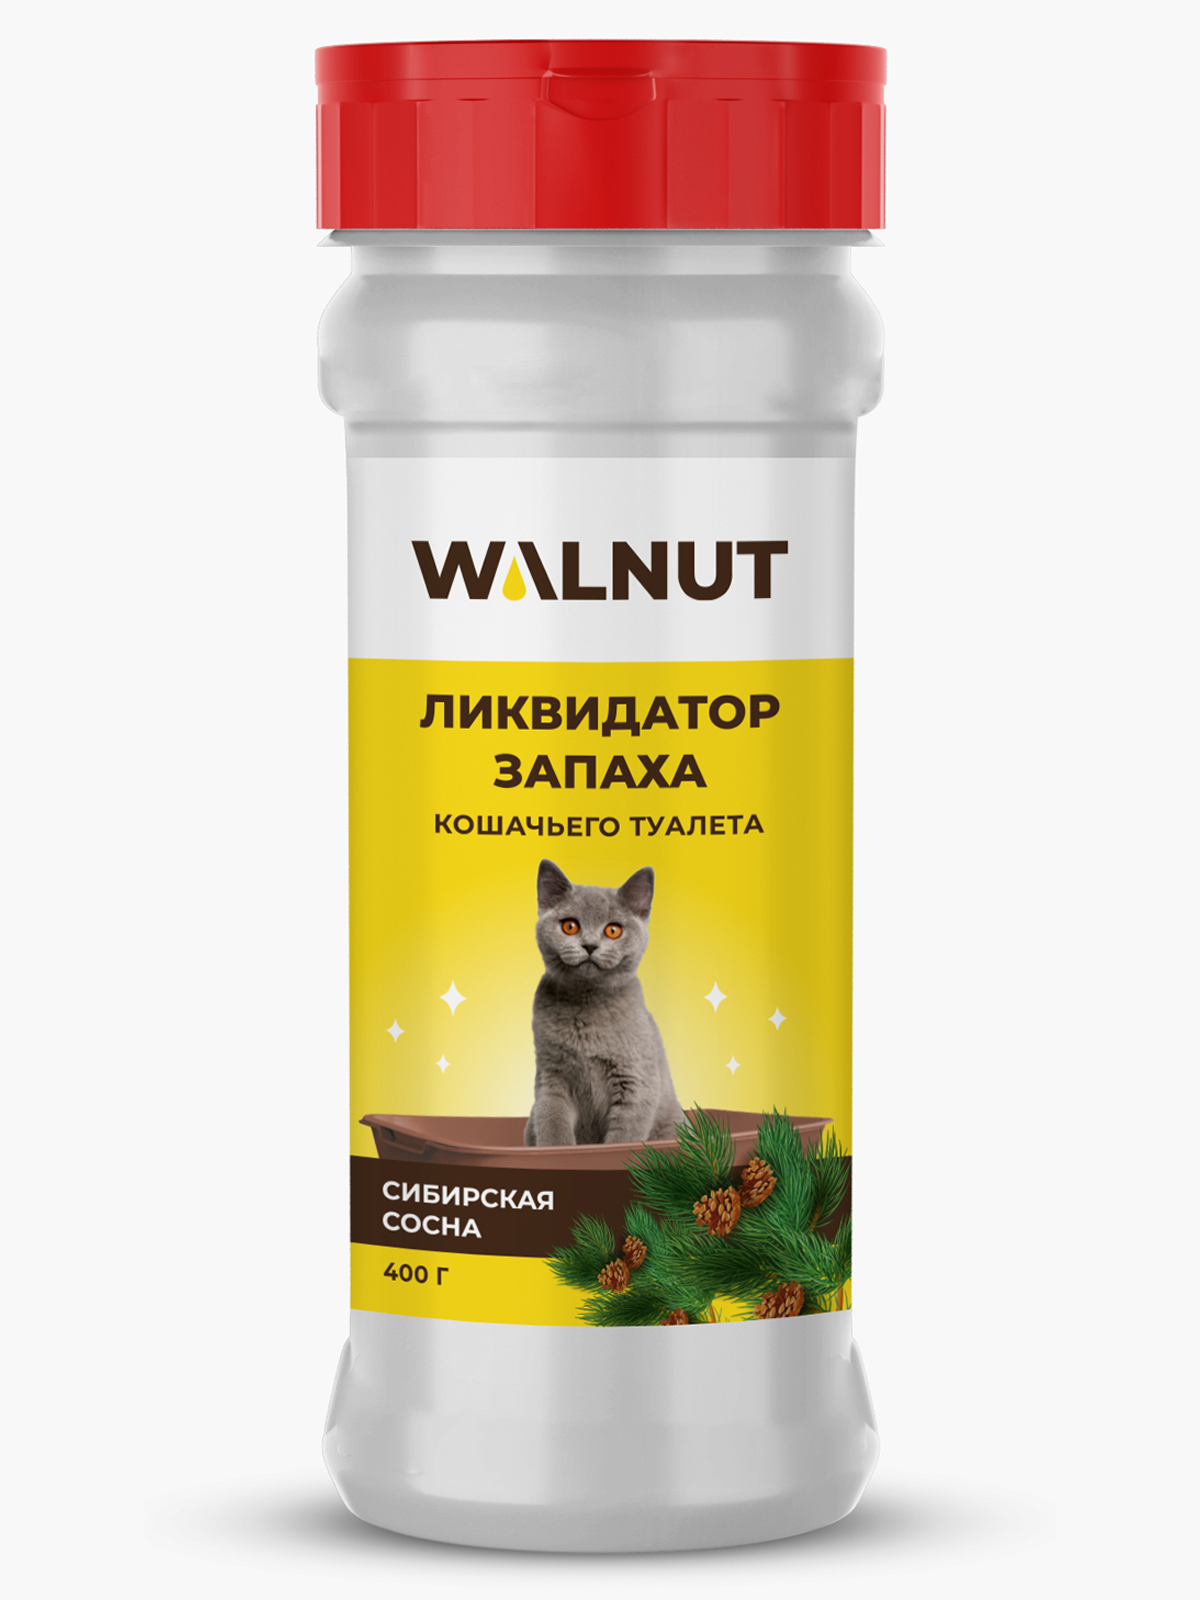 Ликвидатор запаха для кошачьего туалета Walnut сибирская сосна, 400 г